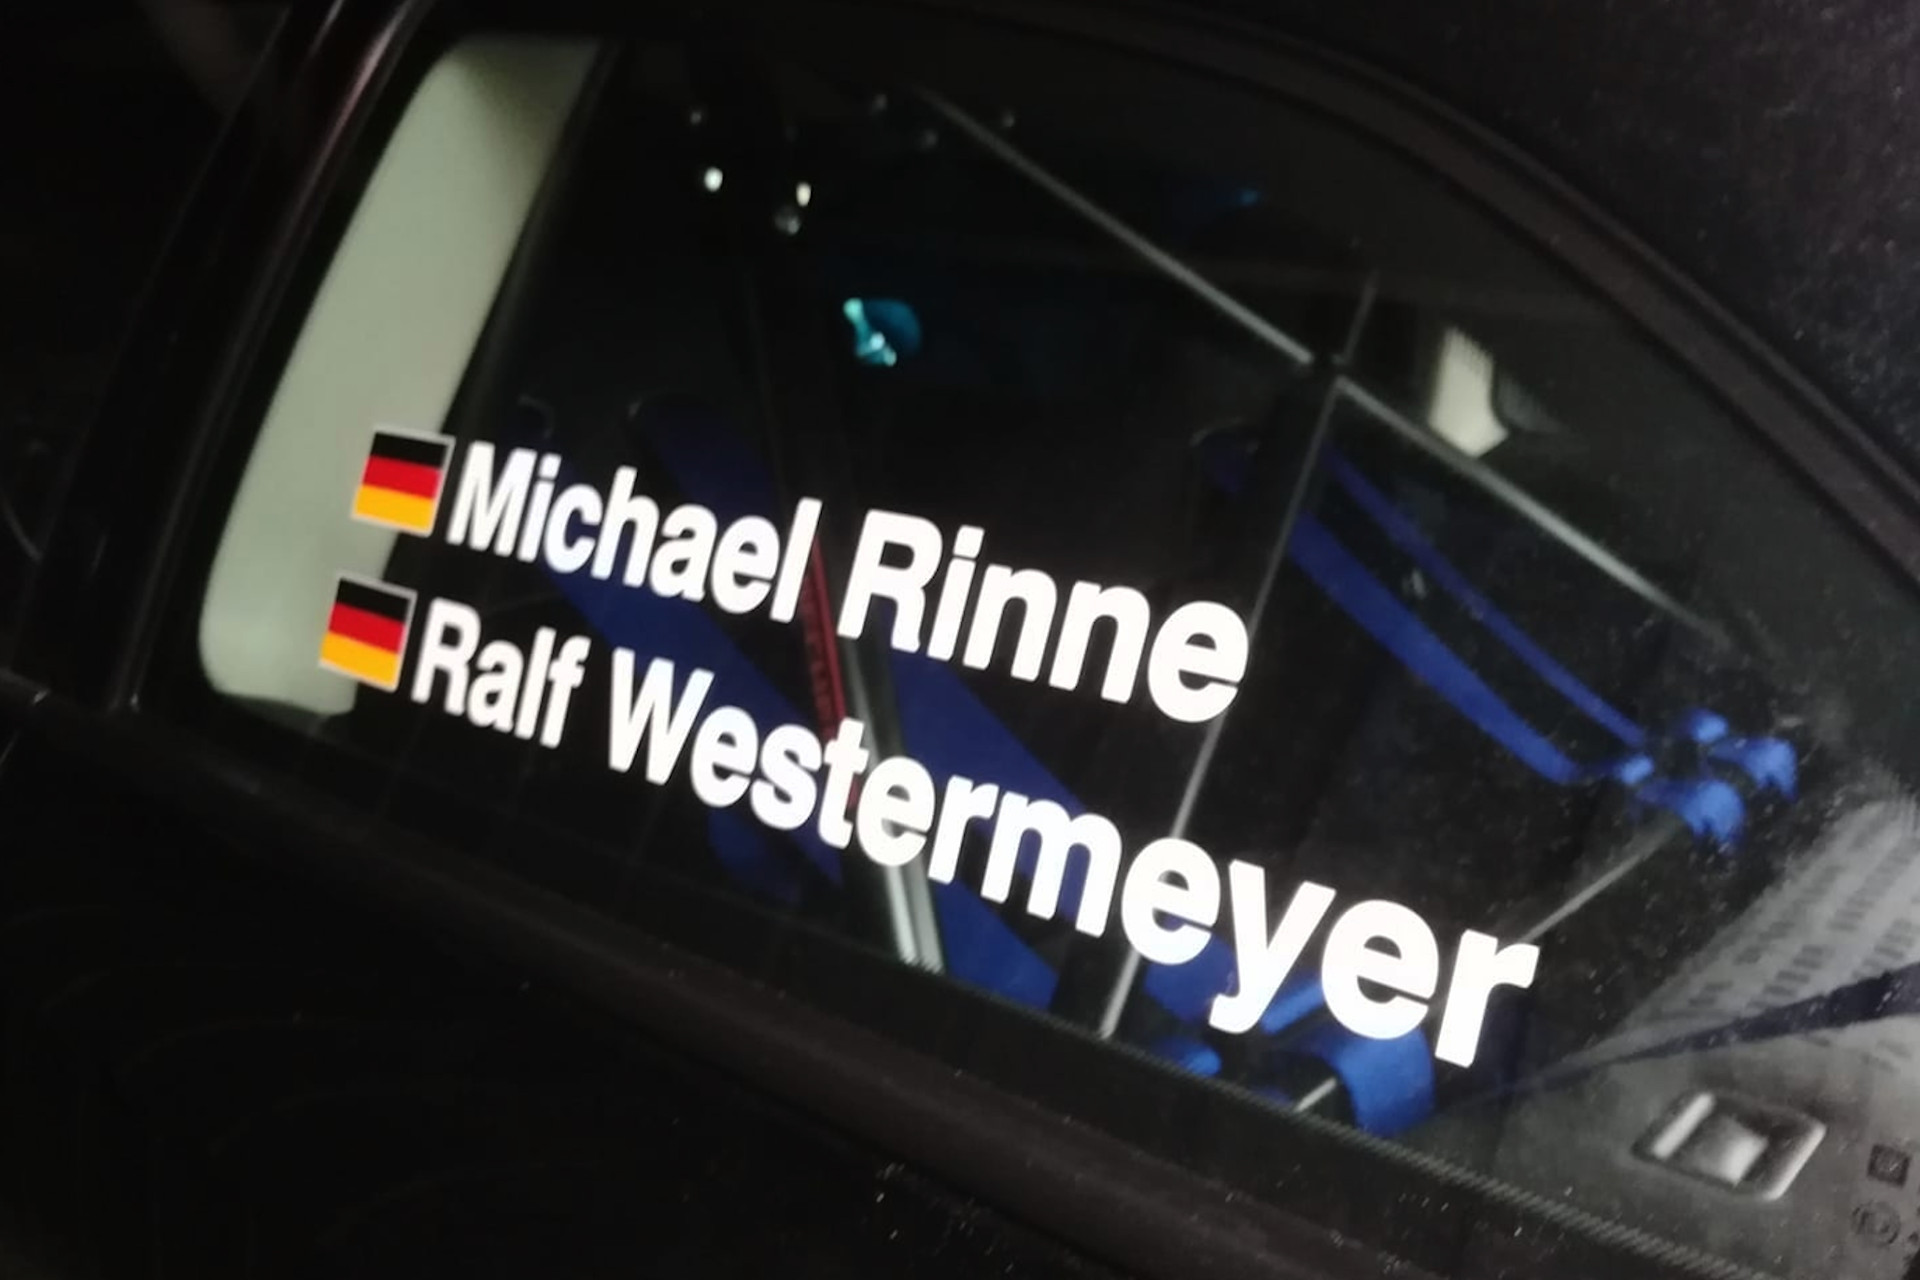 RinneWestermeyer